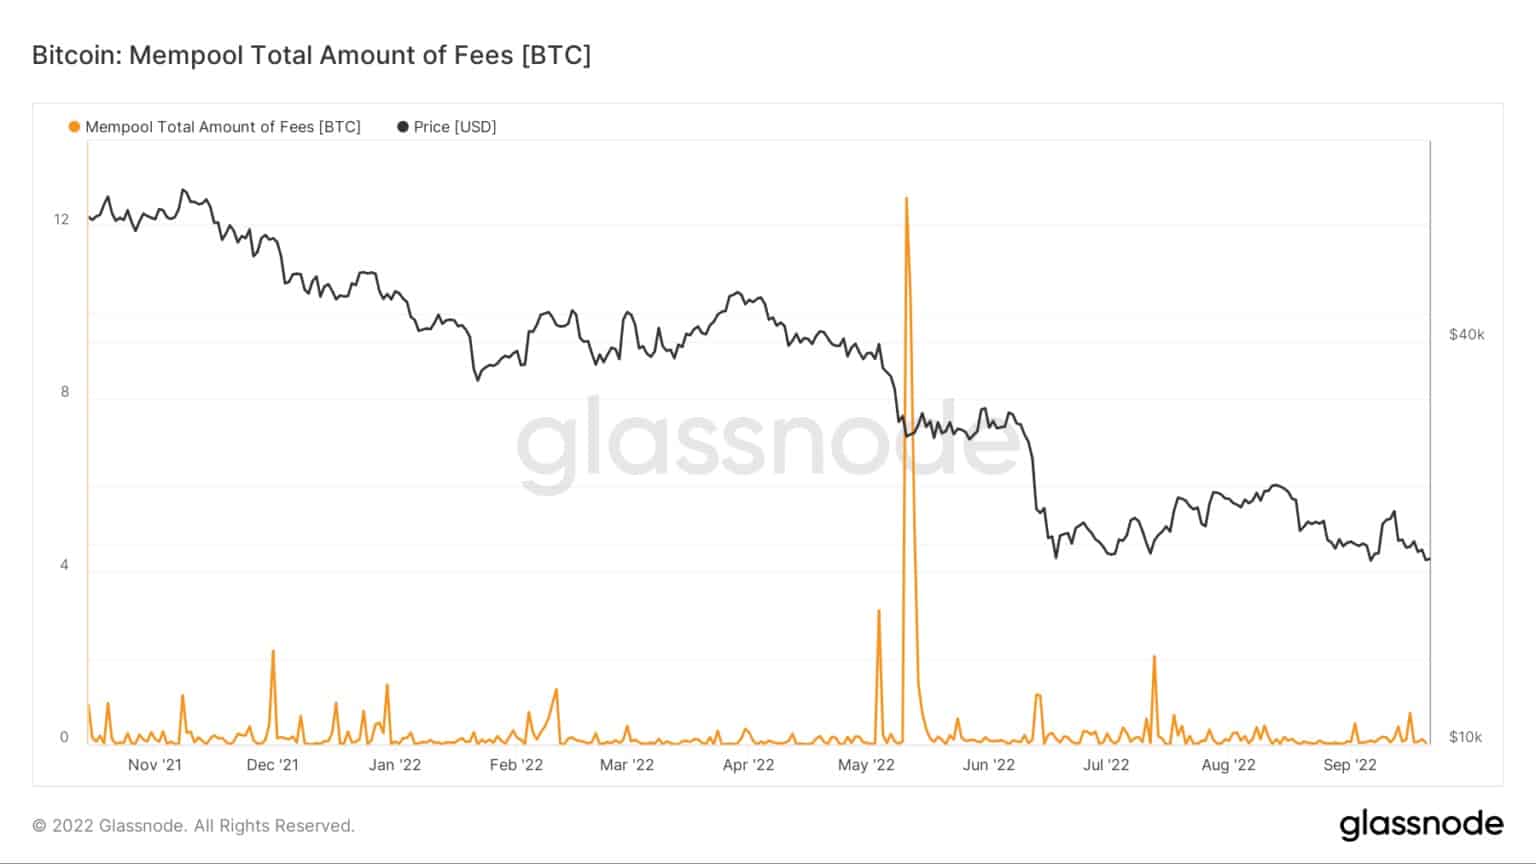 Montante total de taxas Bitcoin no mempool de Novembro de 2021 a Setembro de 2022 (Fonte: Glassnode)